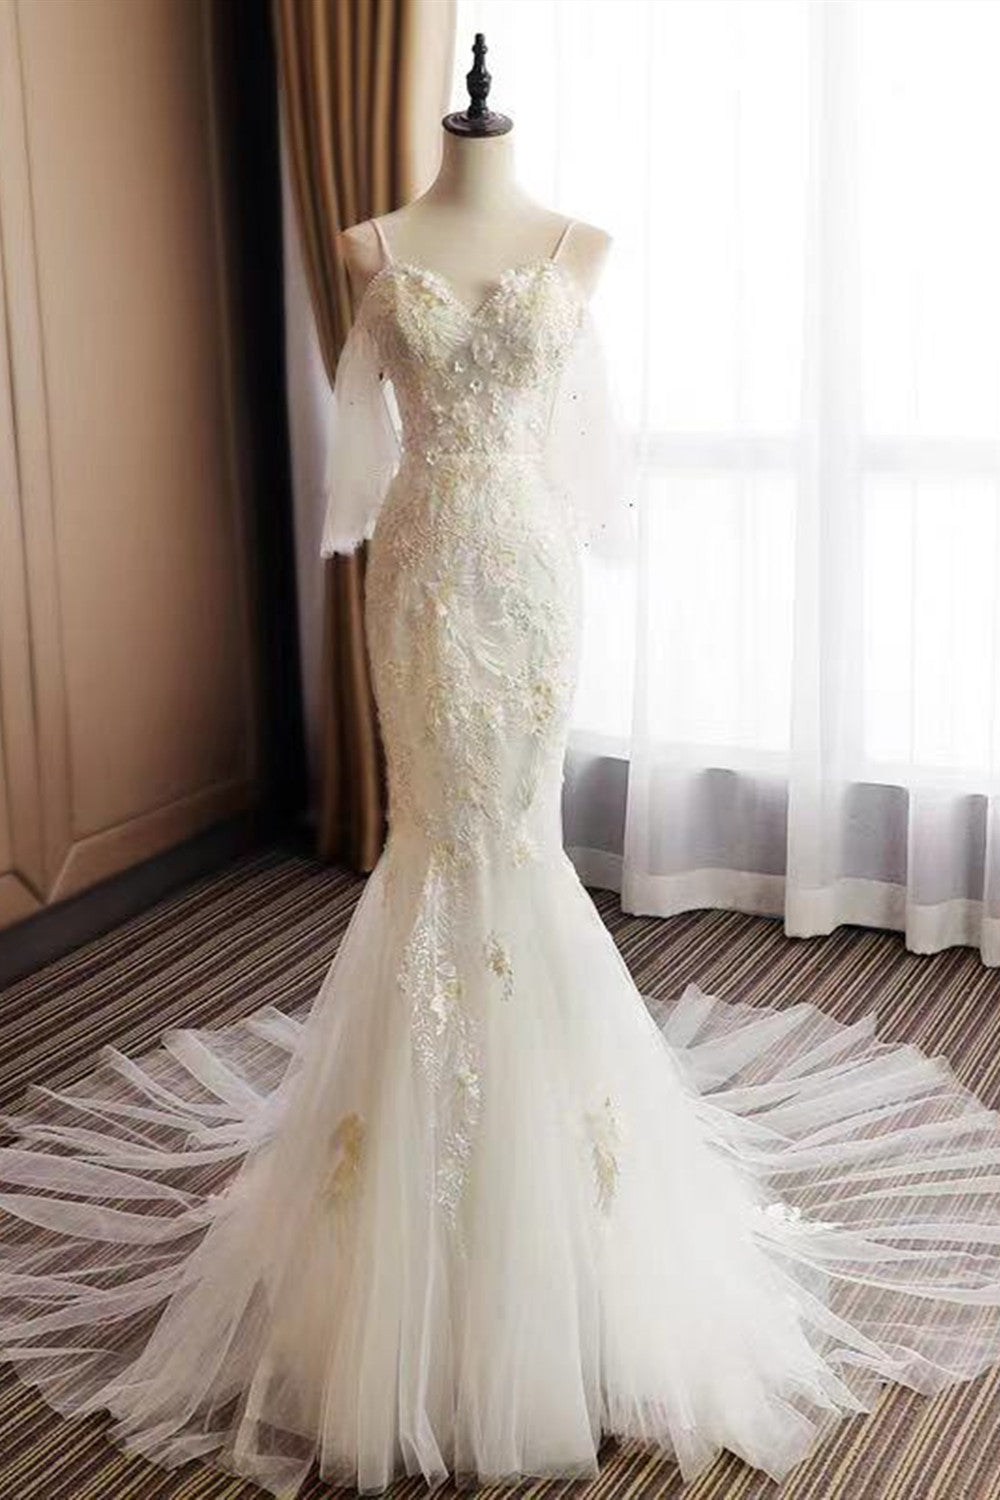 Elegant Appliques Fashion Wedding Dresses, Popular Mermaid Wedding Dresses, Lace Wedding Dresses